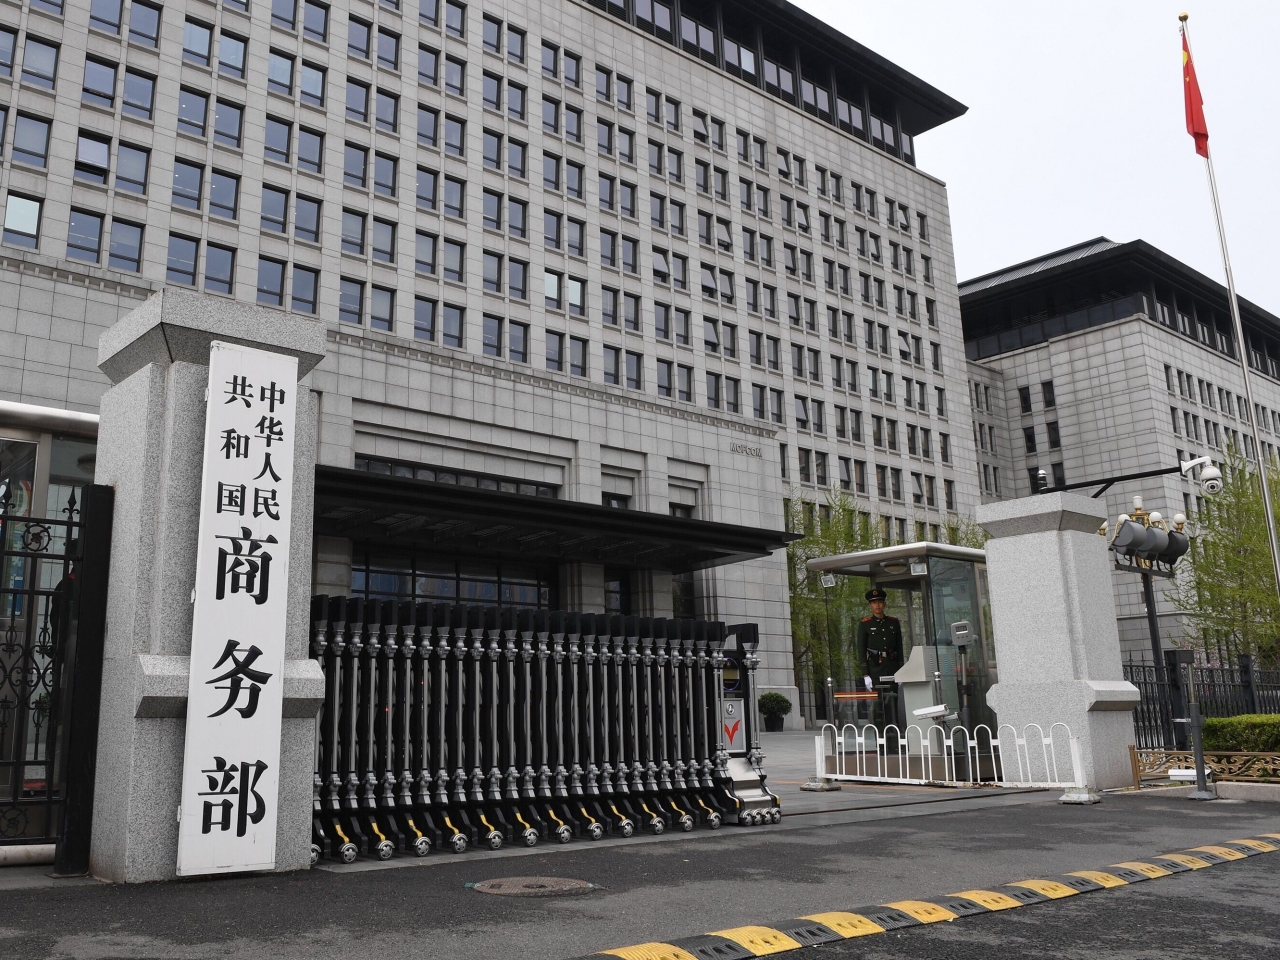 中国就美国对华实施晶片出口管制　诉诸WTO  